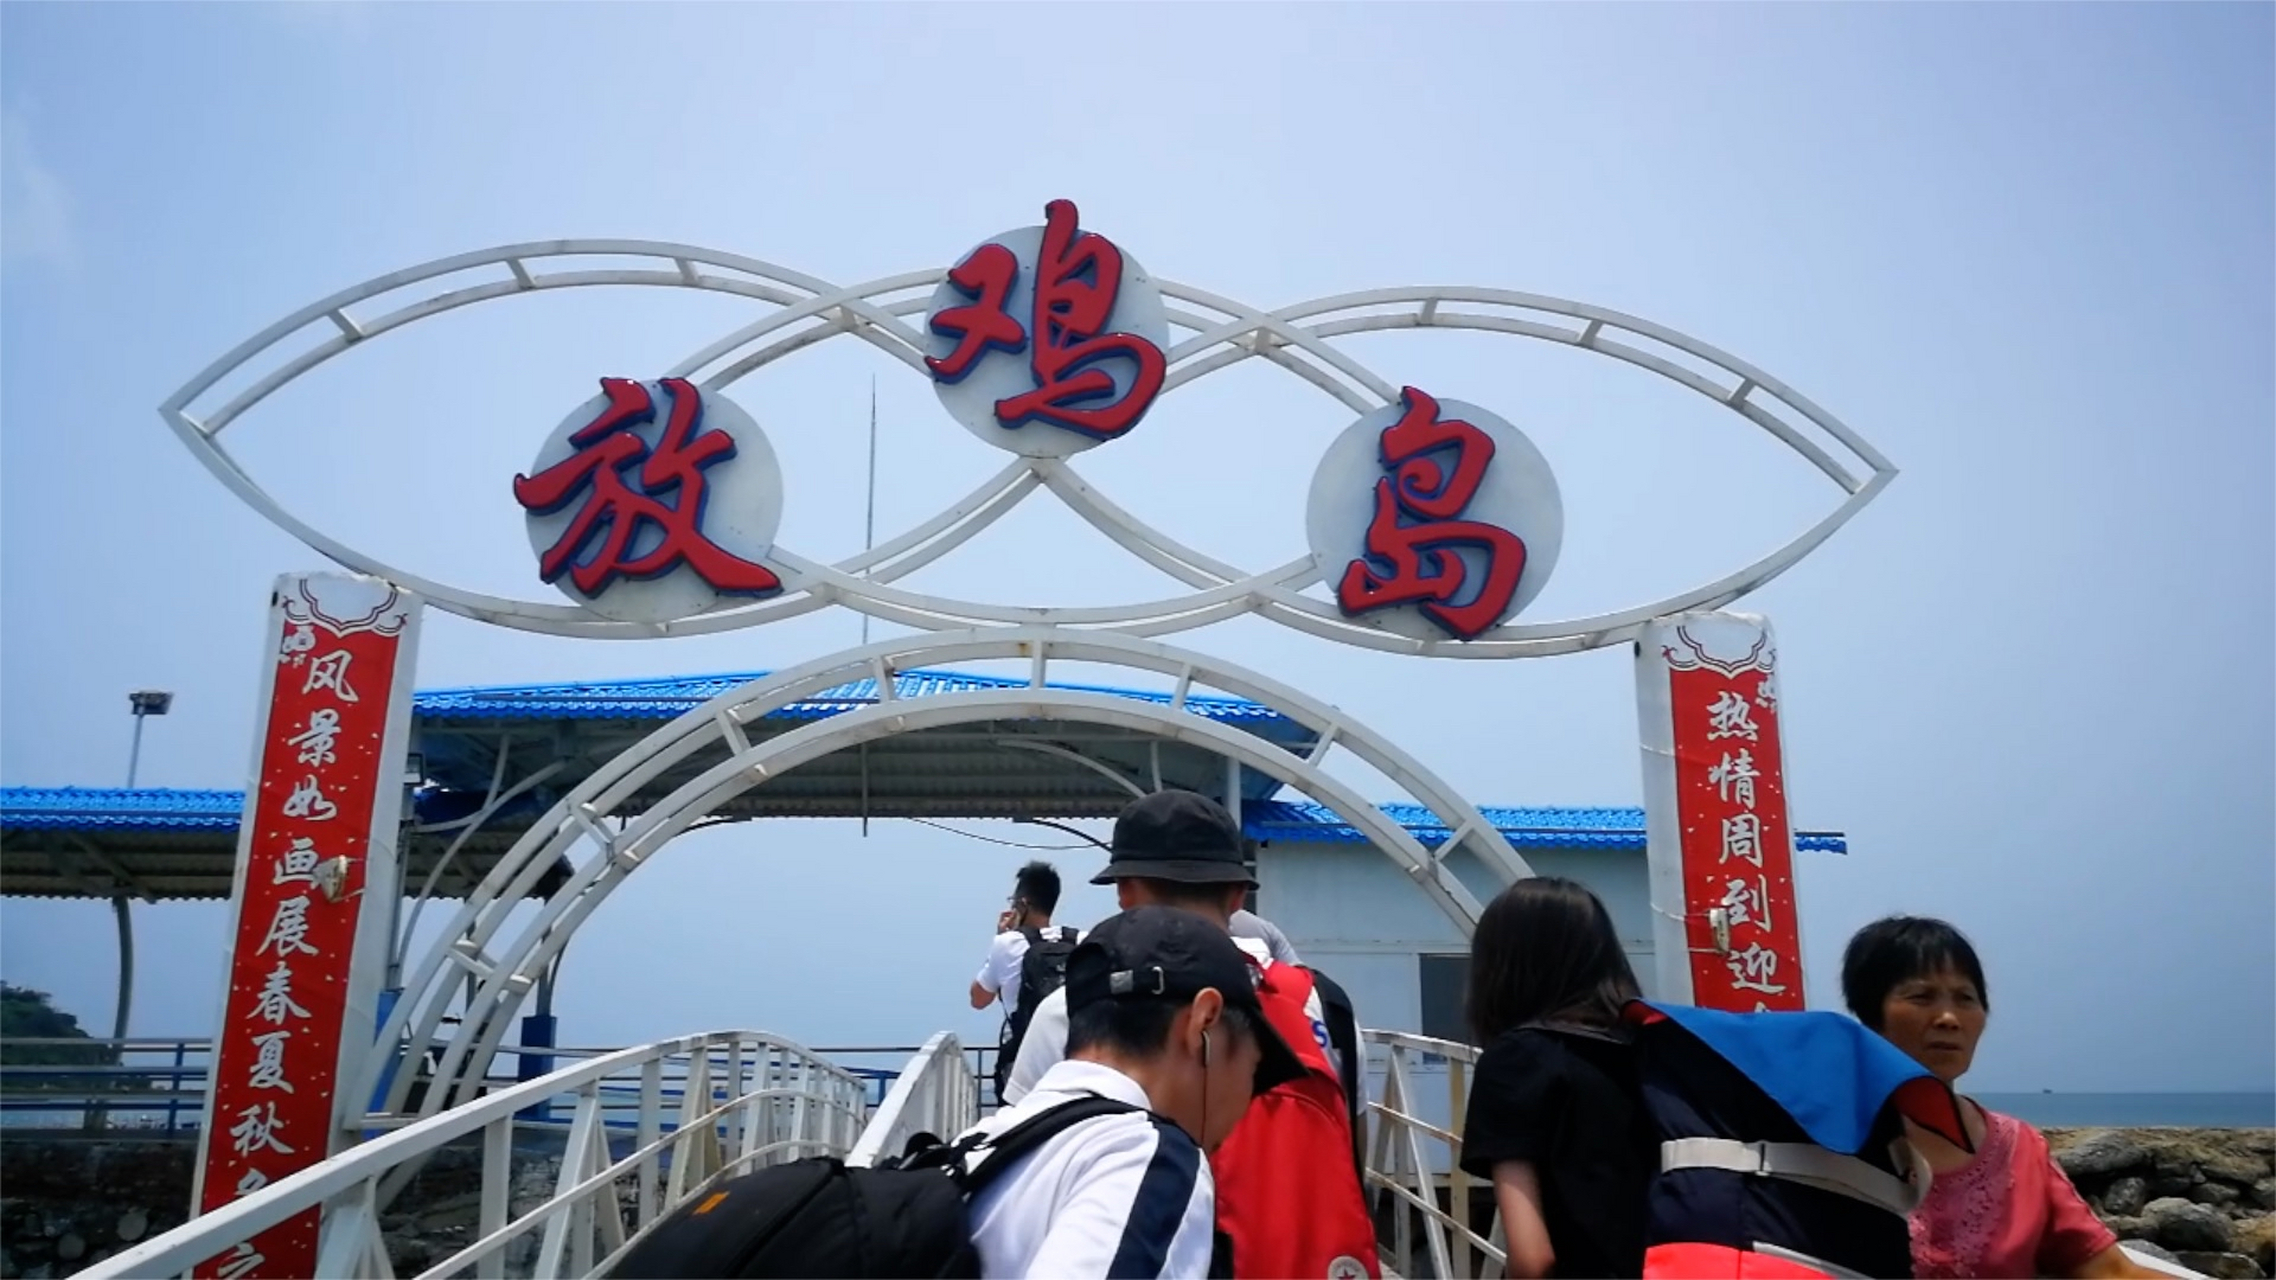 广东茂名放鸡岛:五一小众旅行地,充满诗情画意的海上世界 五一假期,你